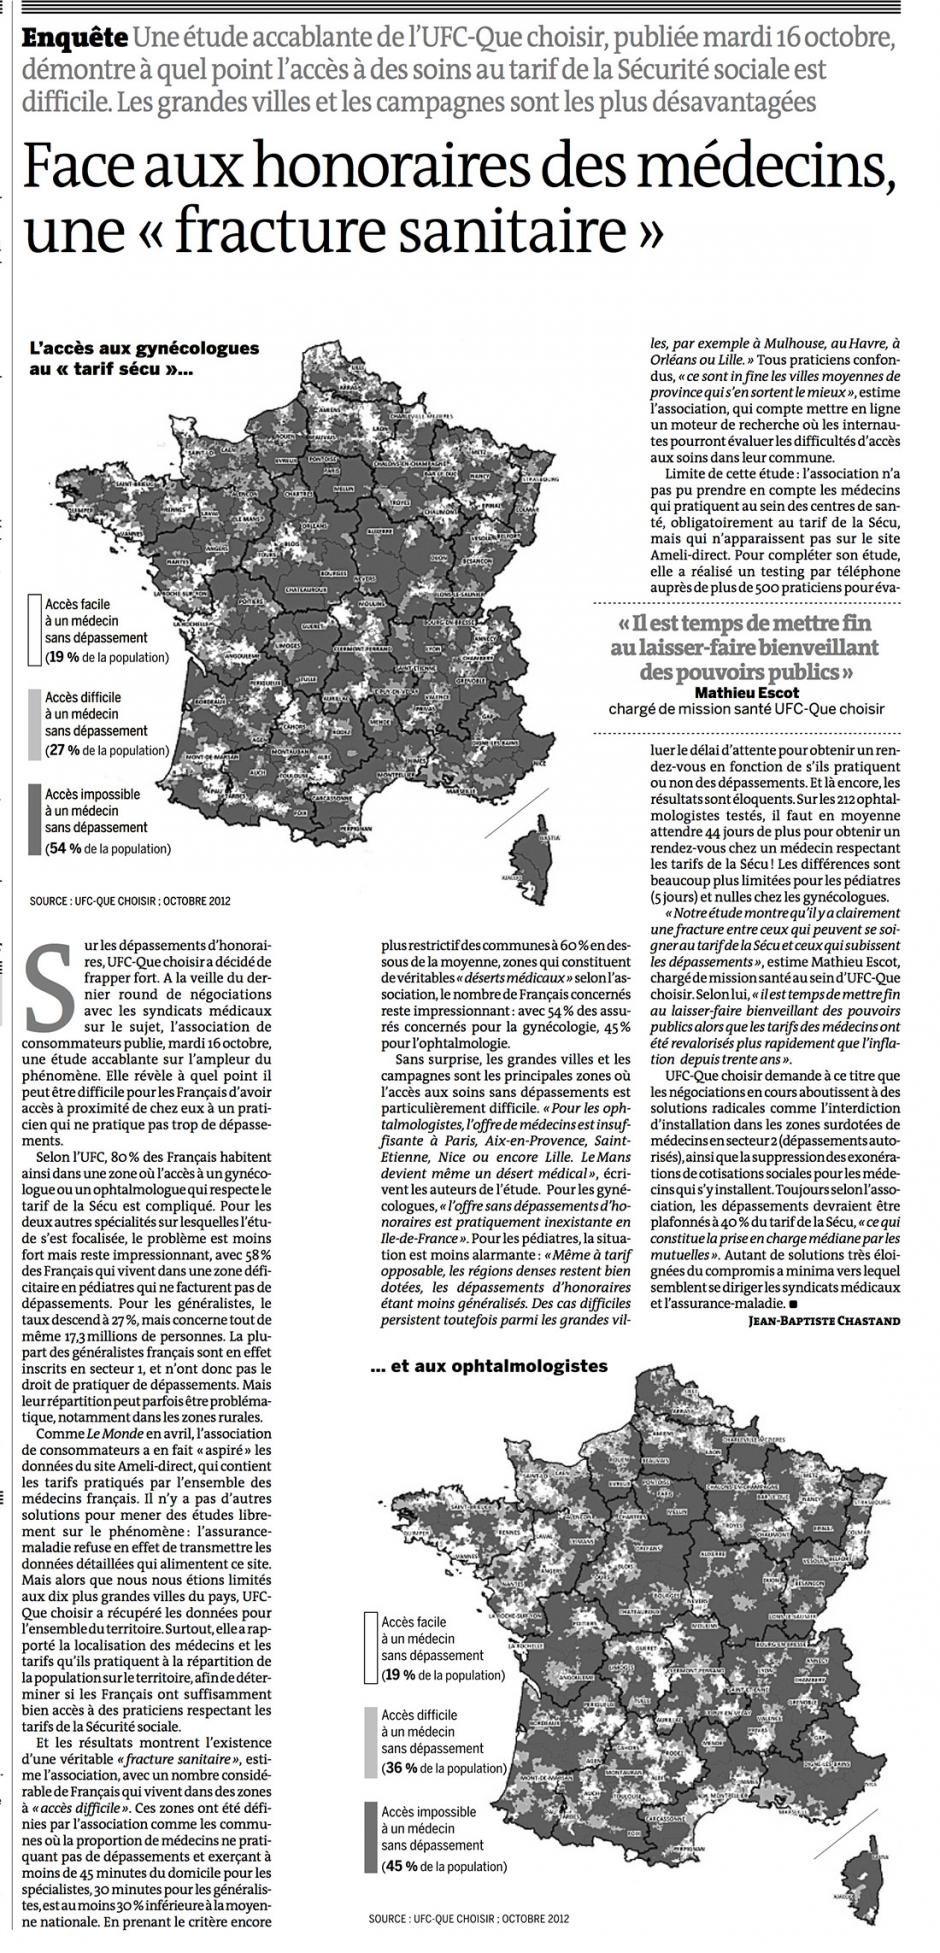 20121017-Le Monde-Face aux honoraires des médecins, une « fracture sanitaire »